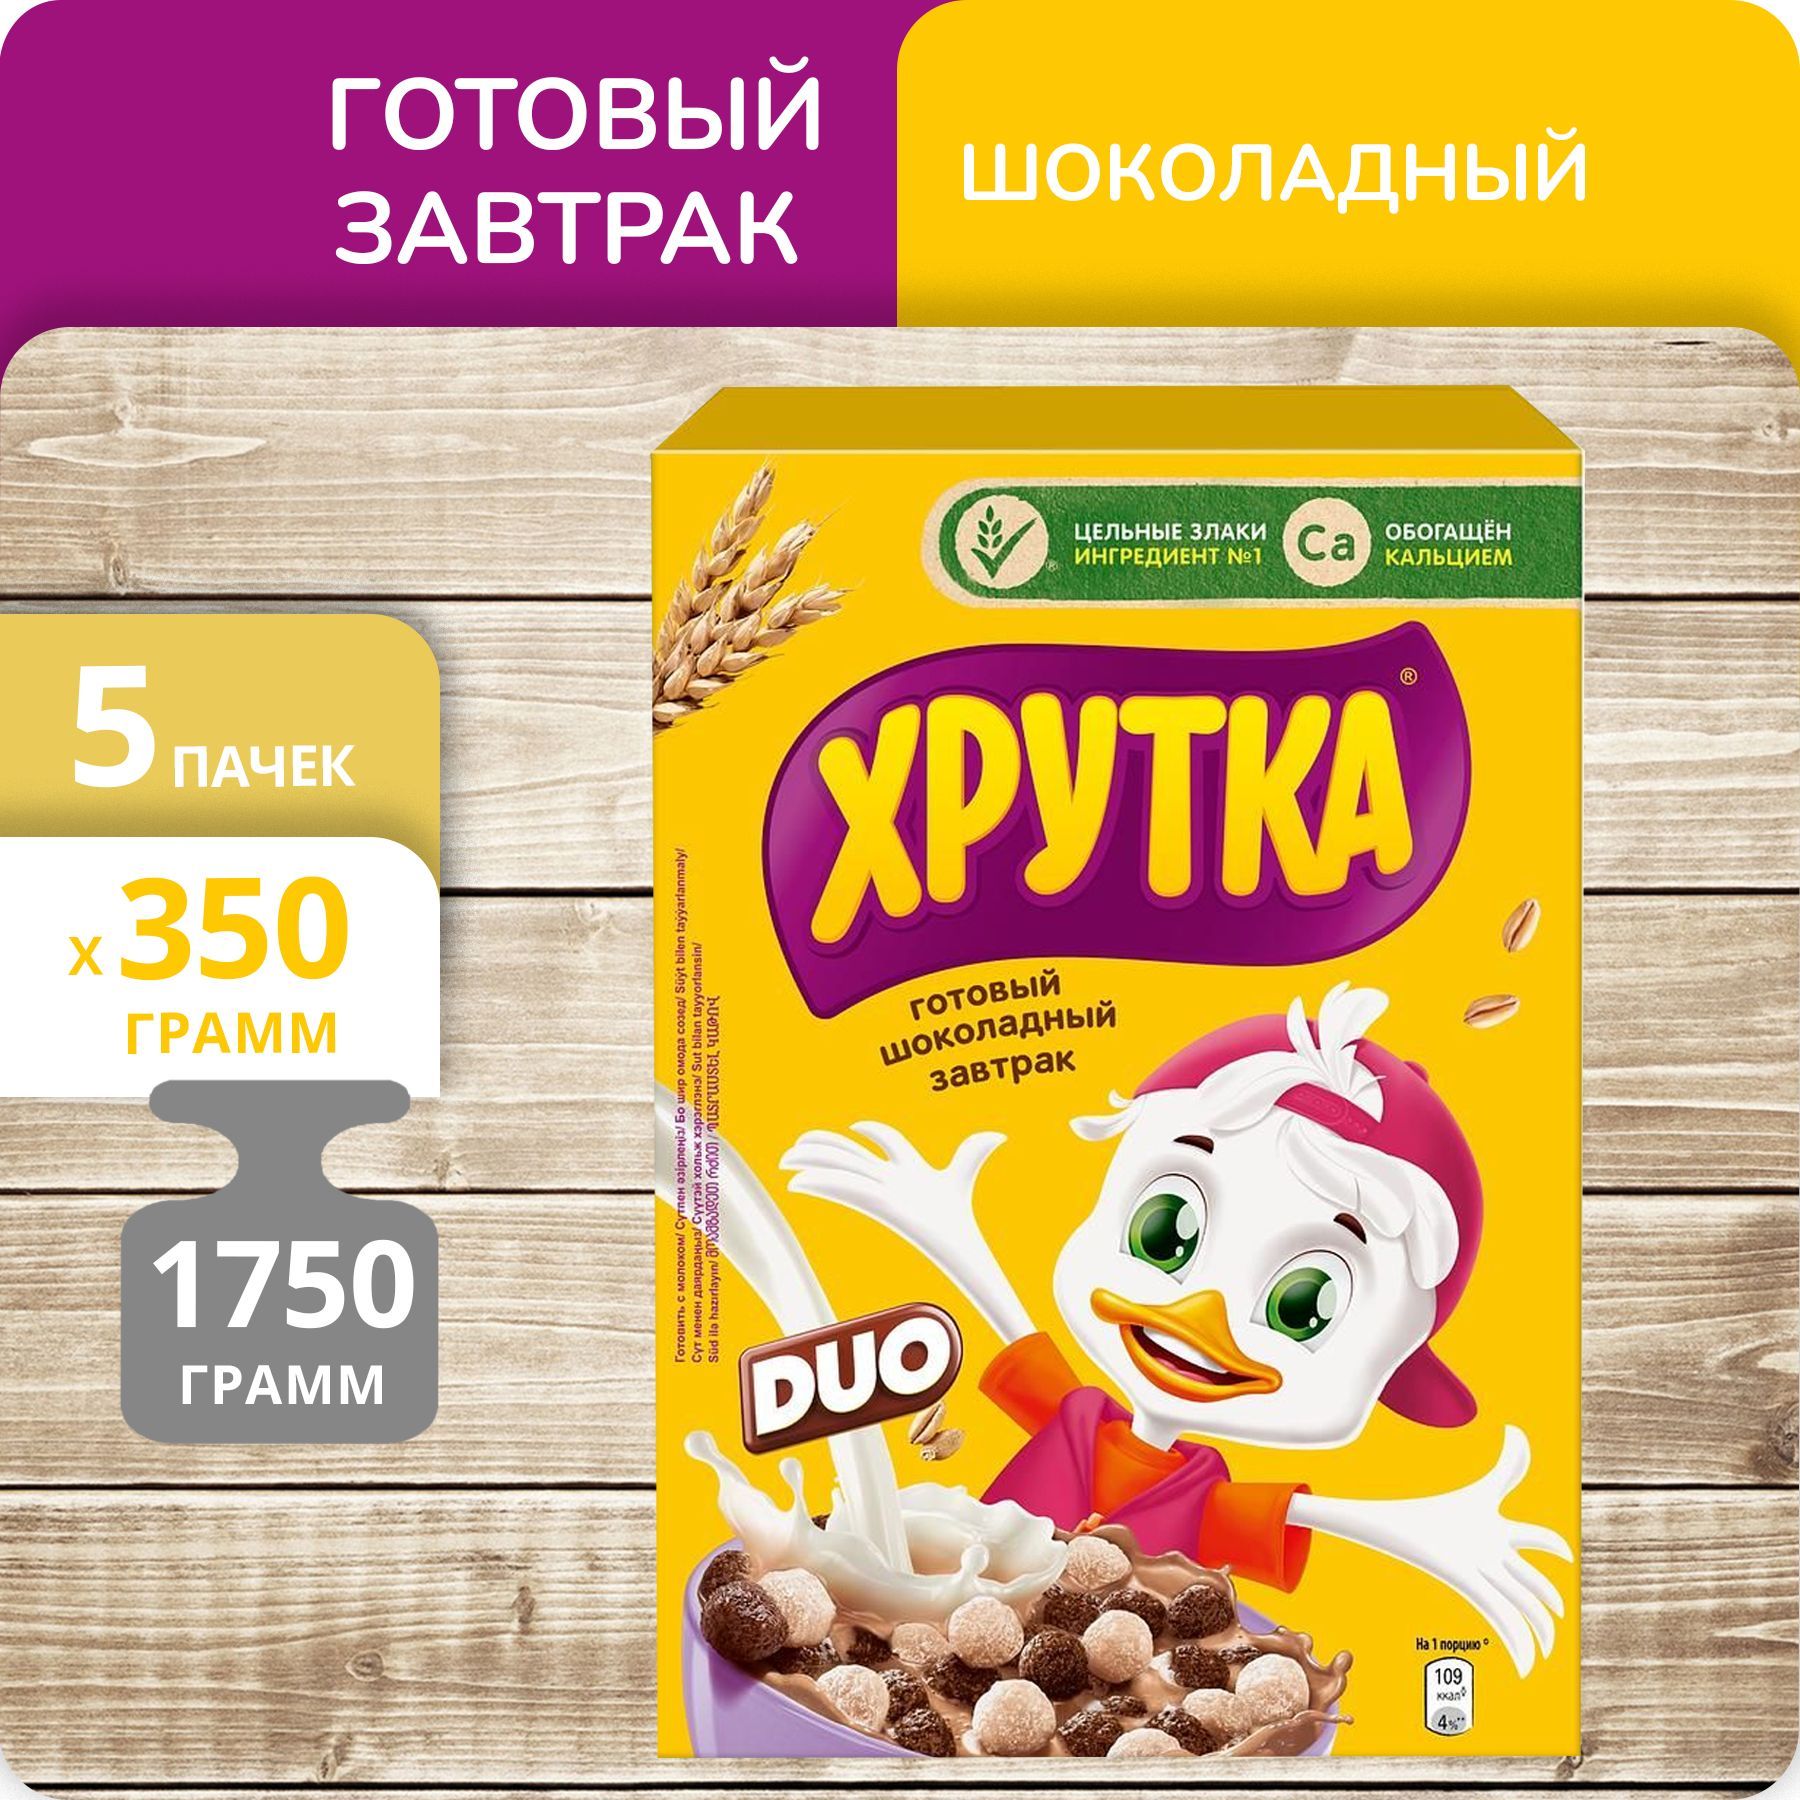 Готовый шоколадный завтрак Nestle Хрутка DUO, 350 г х 5 шт